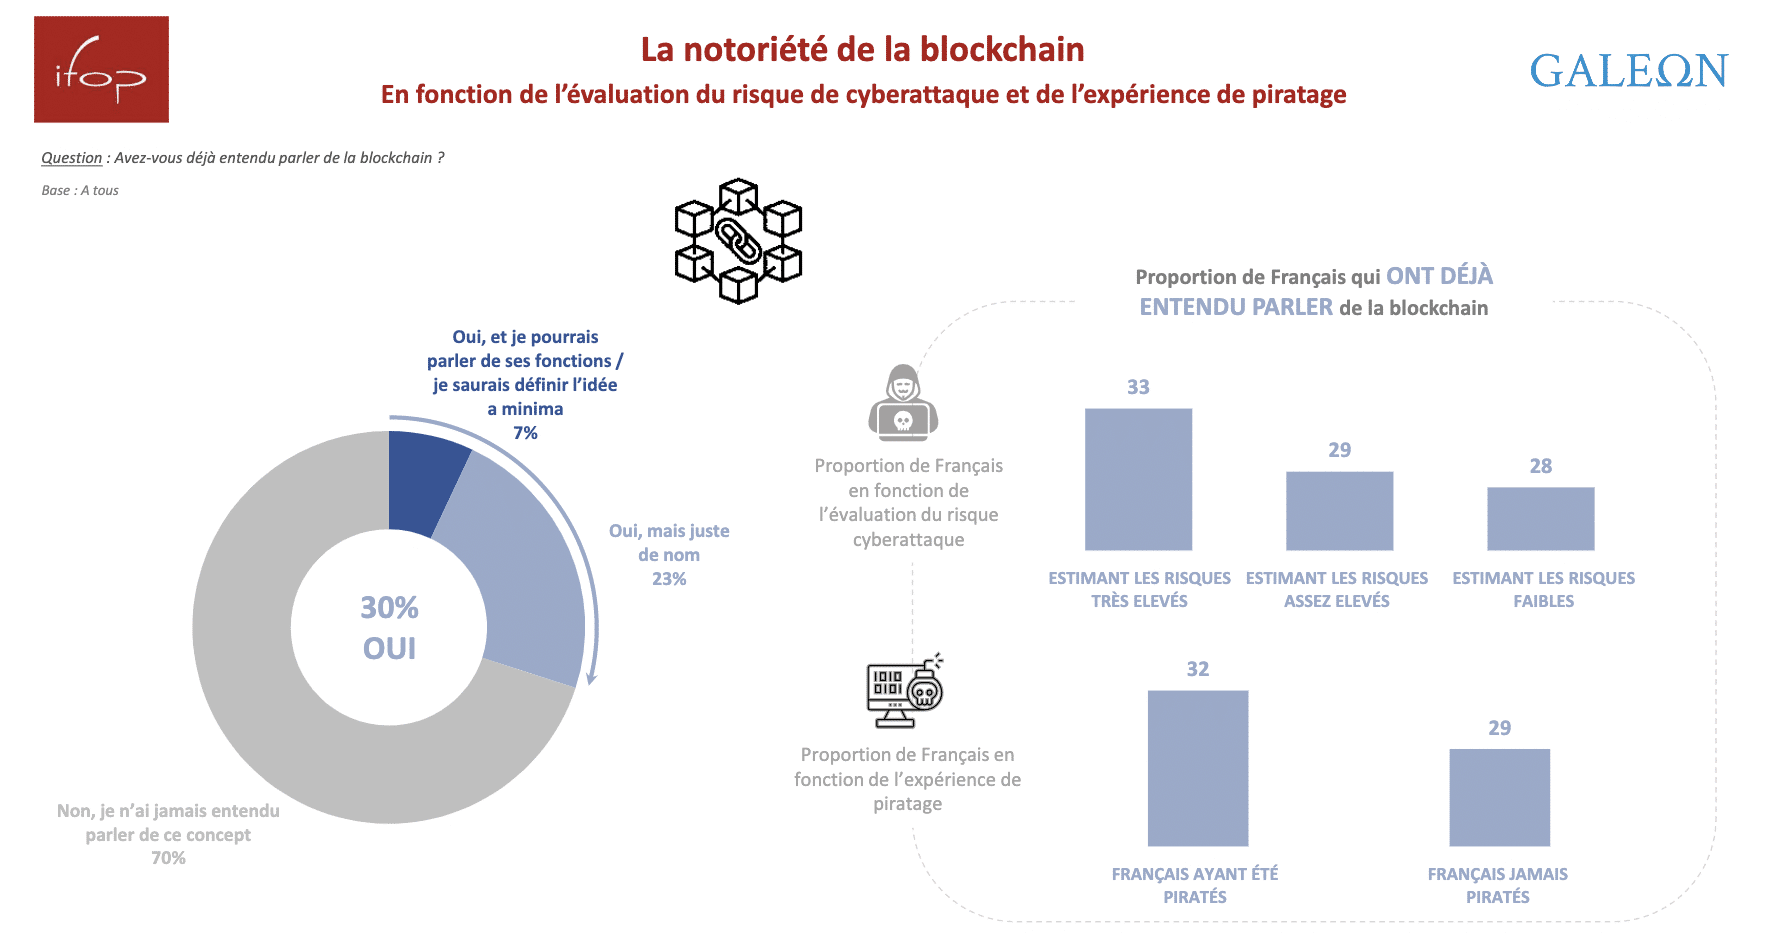 La notoriété de la Blockchain en France